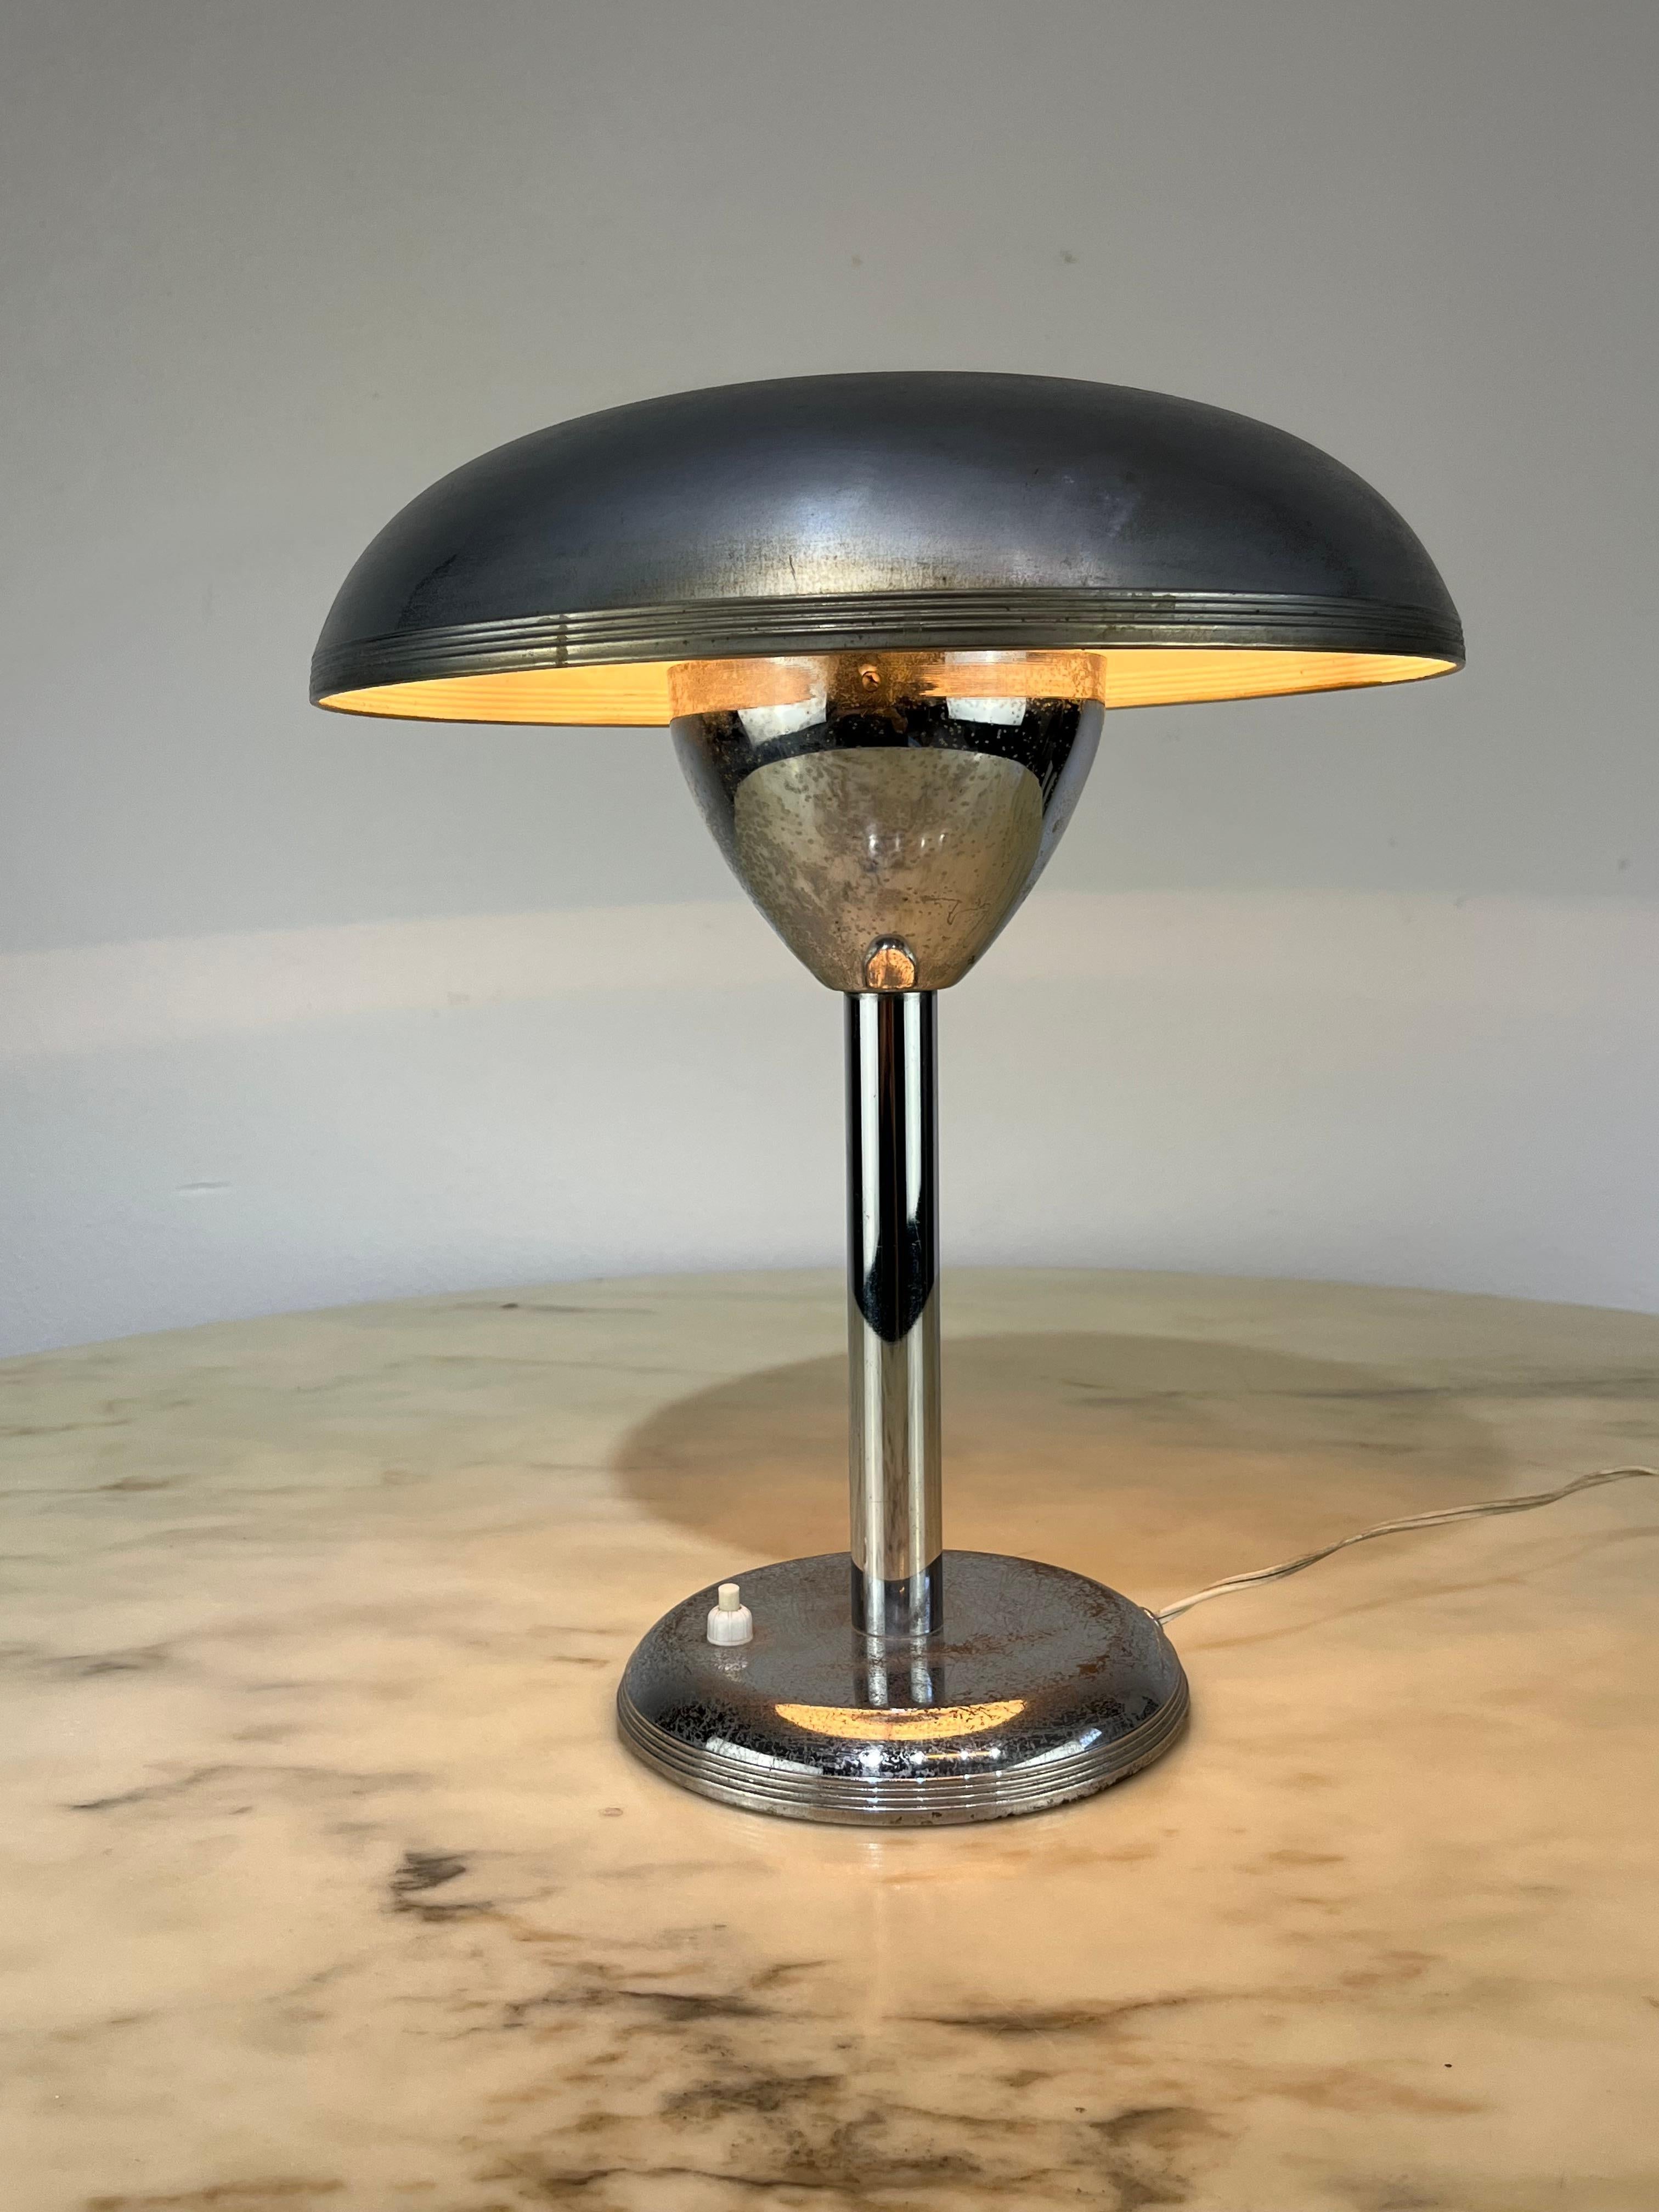 Lampe de table des années 1930. Style Bahaus, 36 cm de haut, 28 cm de diamètre. Il présente des signes de vieillissement et d'oxydation mais est entièrement fonctionnel.

Le Bauhaus, dont le nom complet était Staatliches Bauhaus, était une école